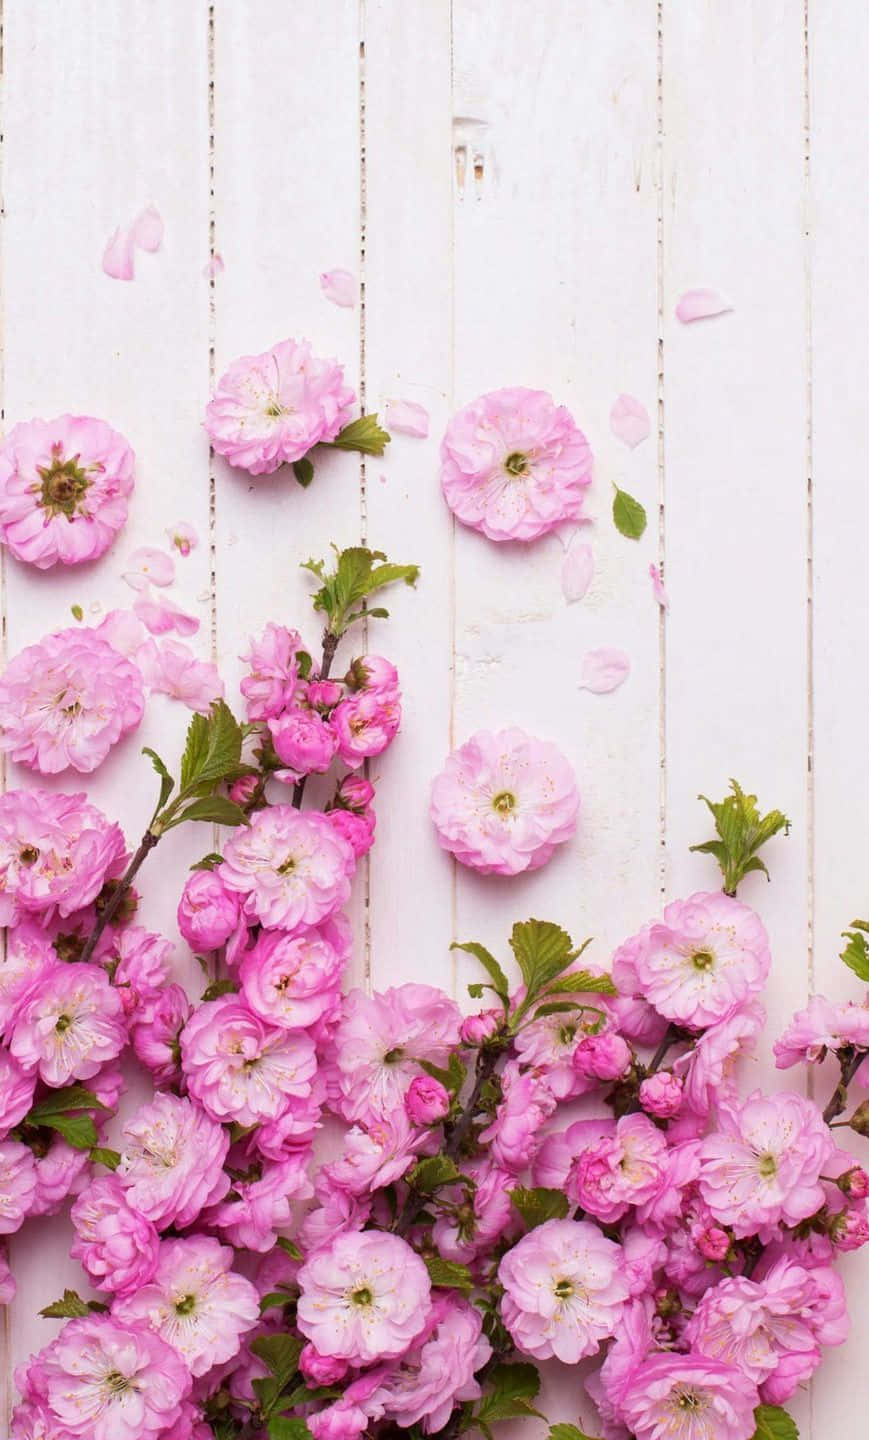 Verschöneredein Telefon Mit Lebendig Gefärbten Blumen Wallpaper